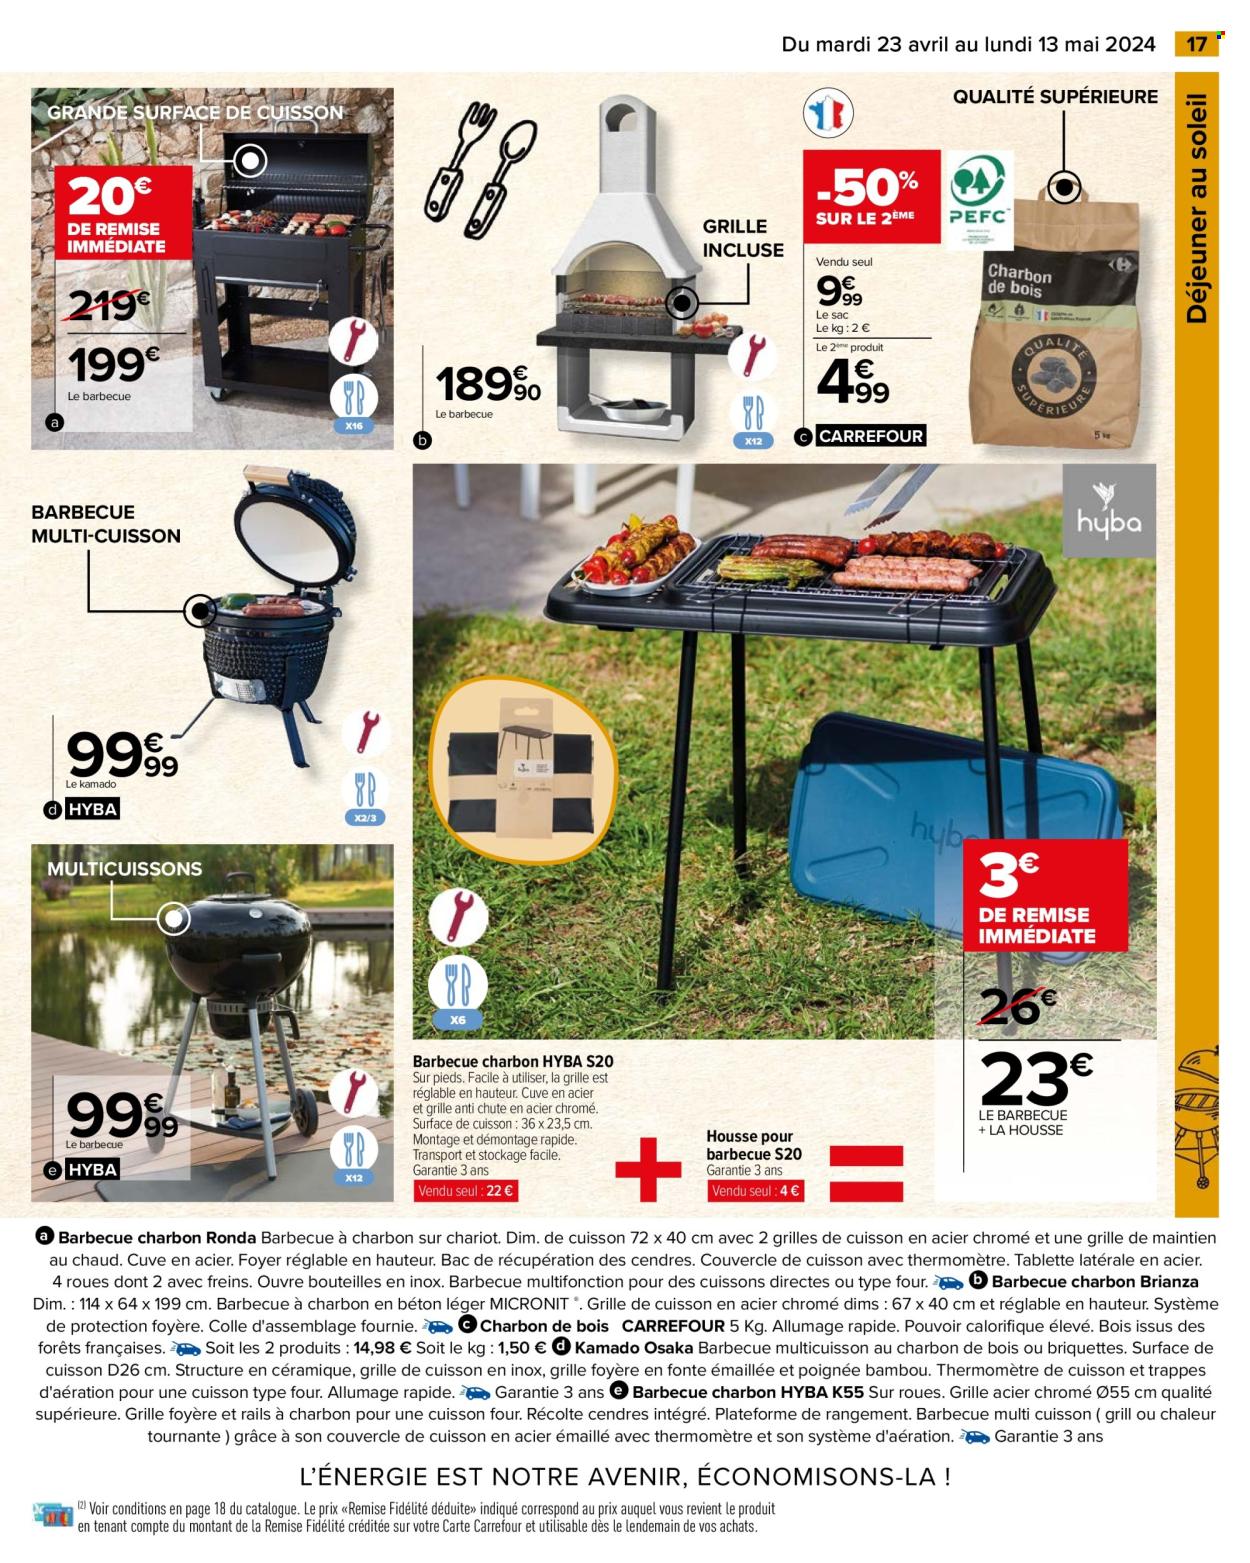 thumbnail - Catalogue Carrefour Hypermarchés - 23/04/2024 - 13/05/2024 - Produits soldés - charbon de bois, barbecue. Page 19.